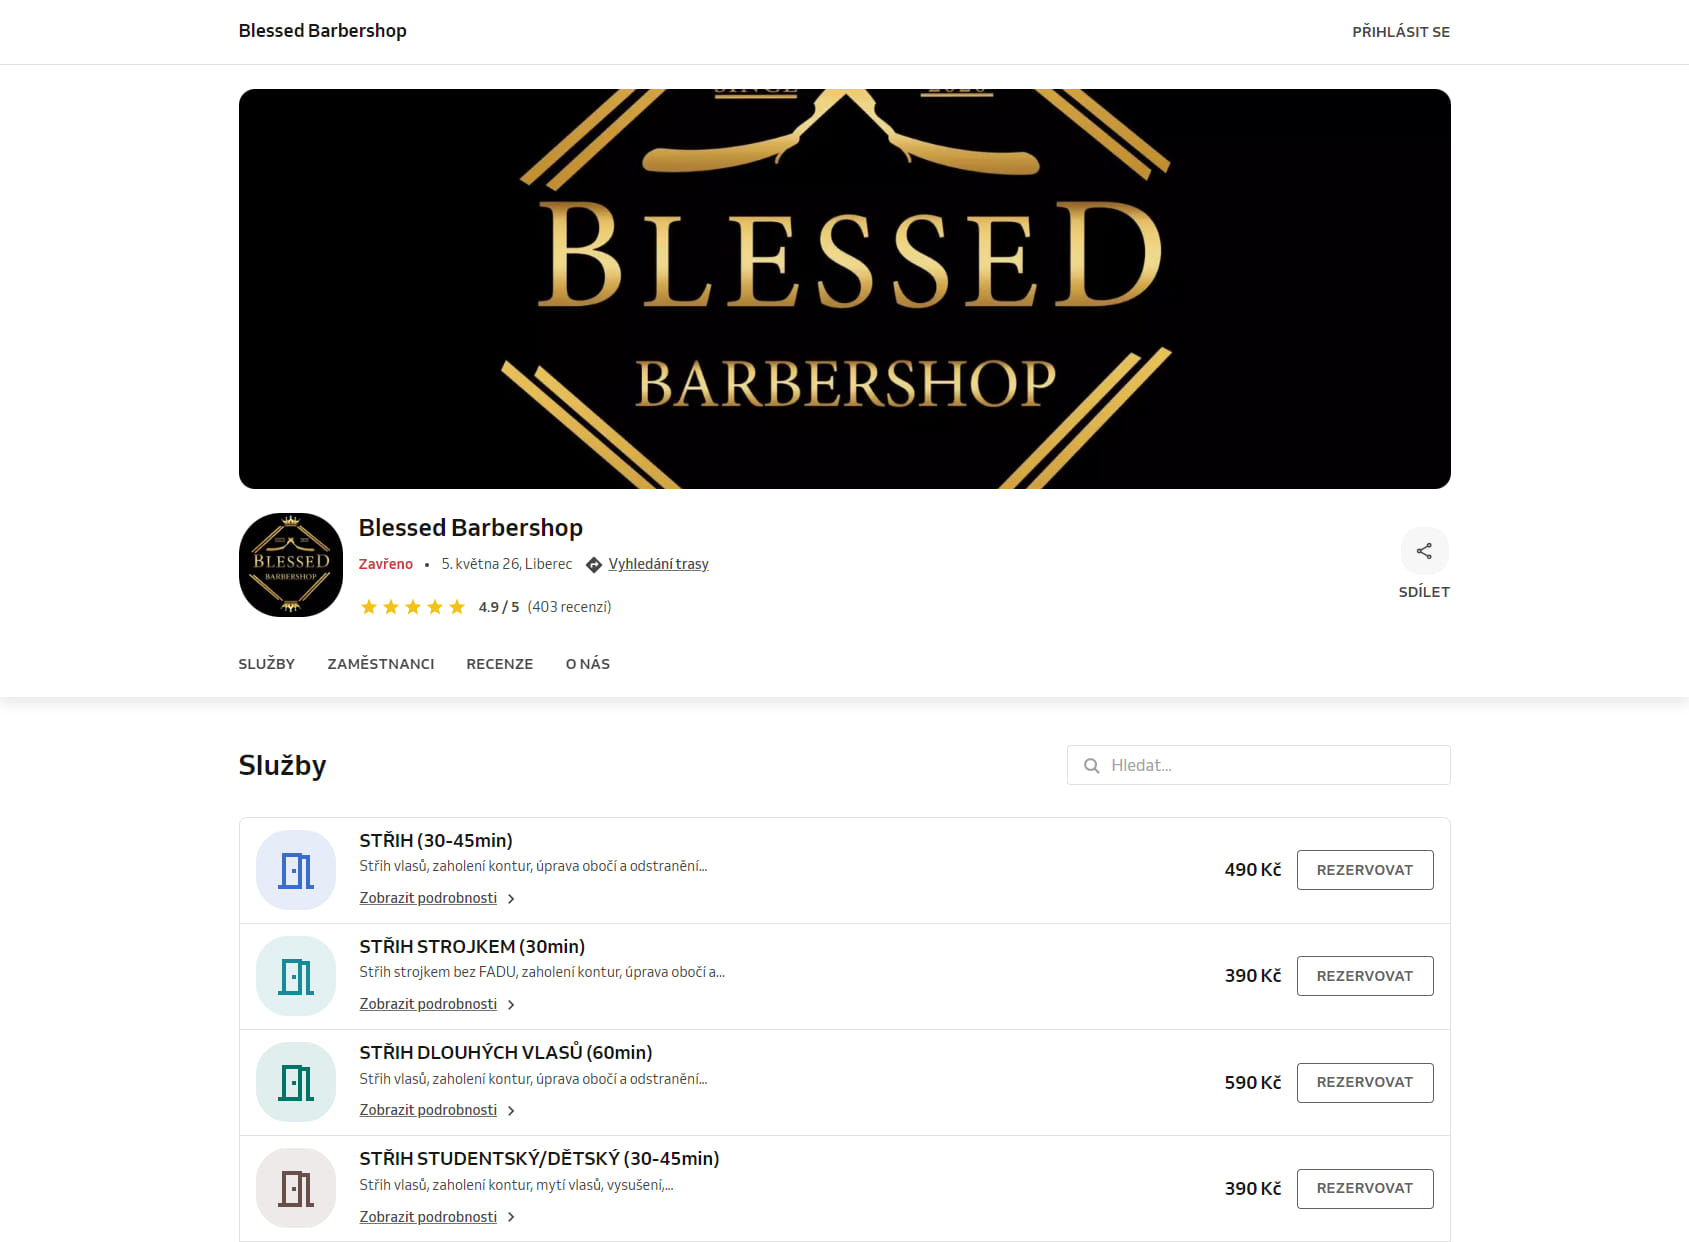 Blessed Barbershop